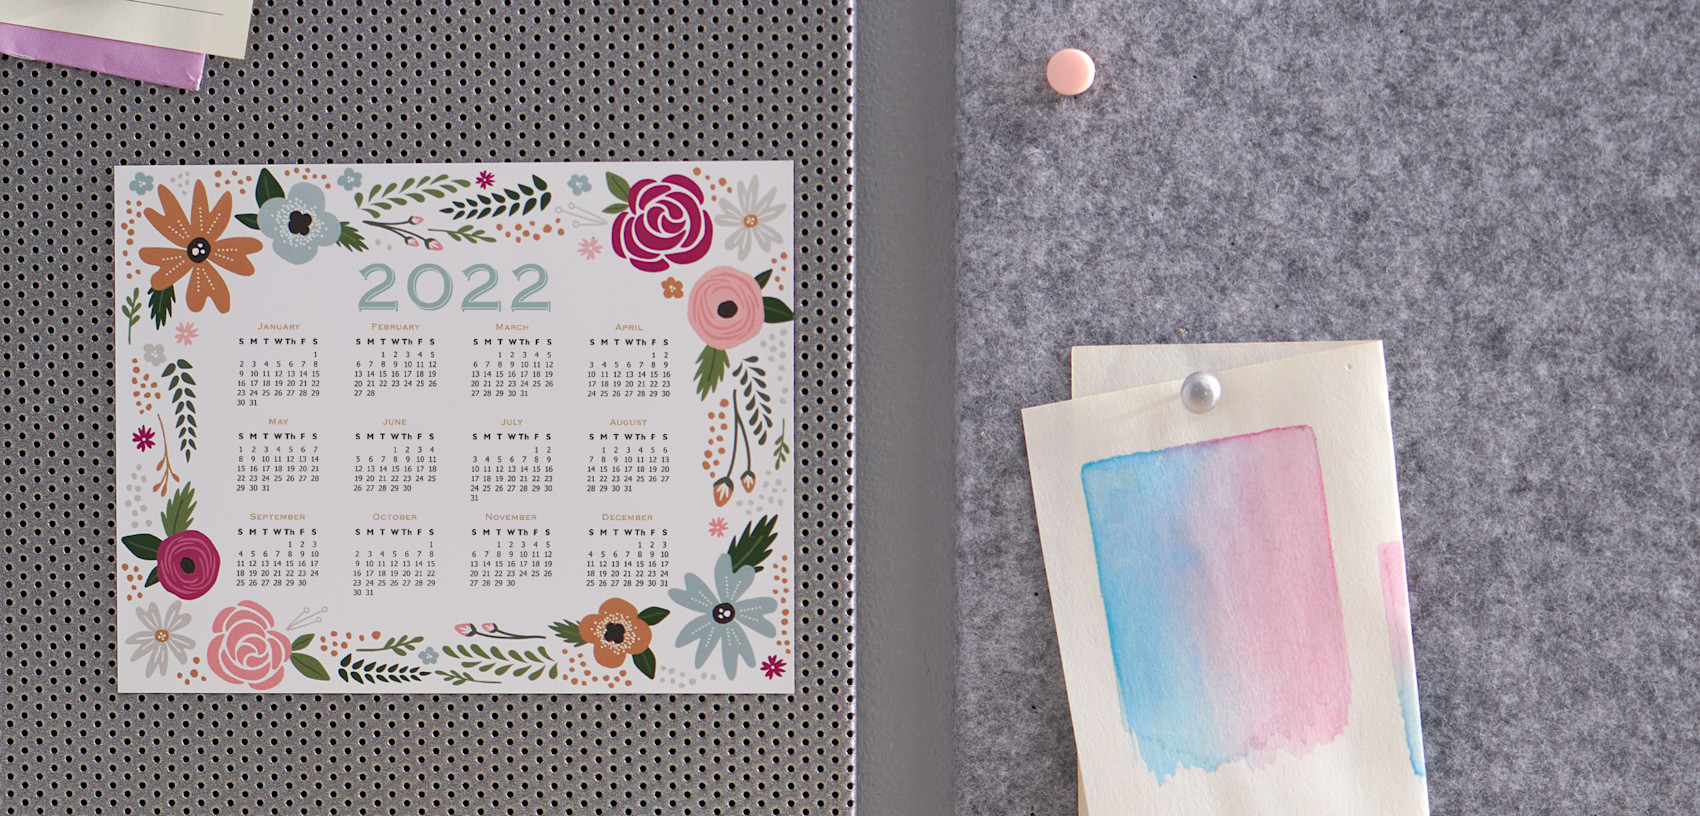 Larger version: floral magnetic calendar 